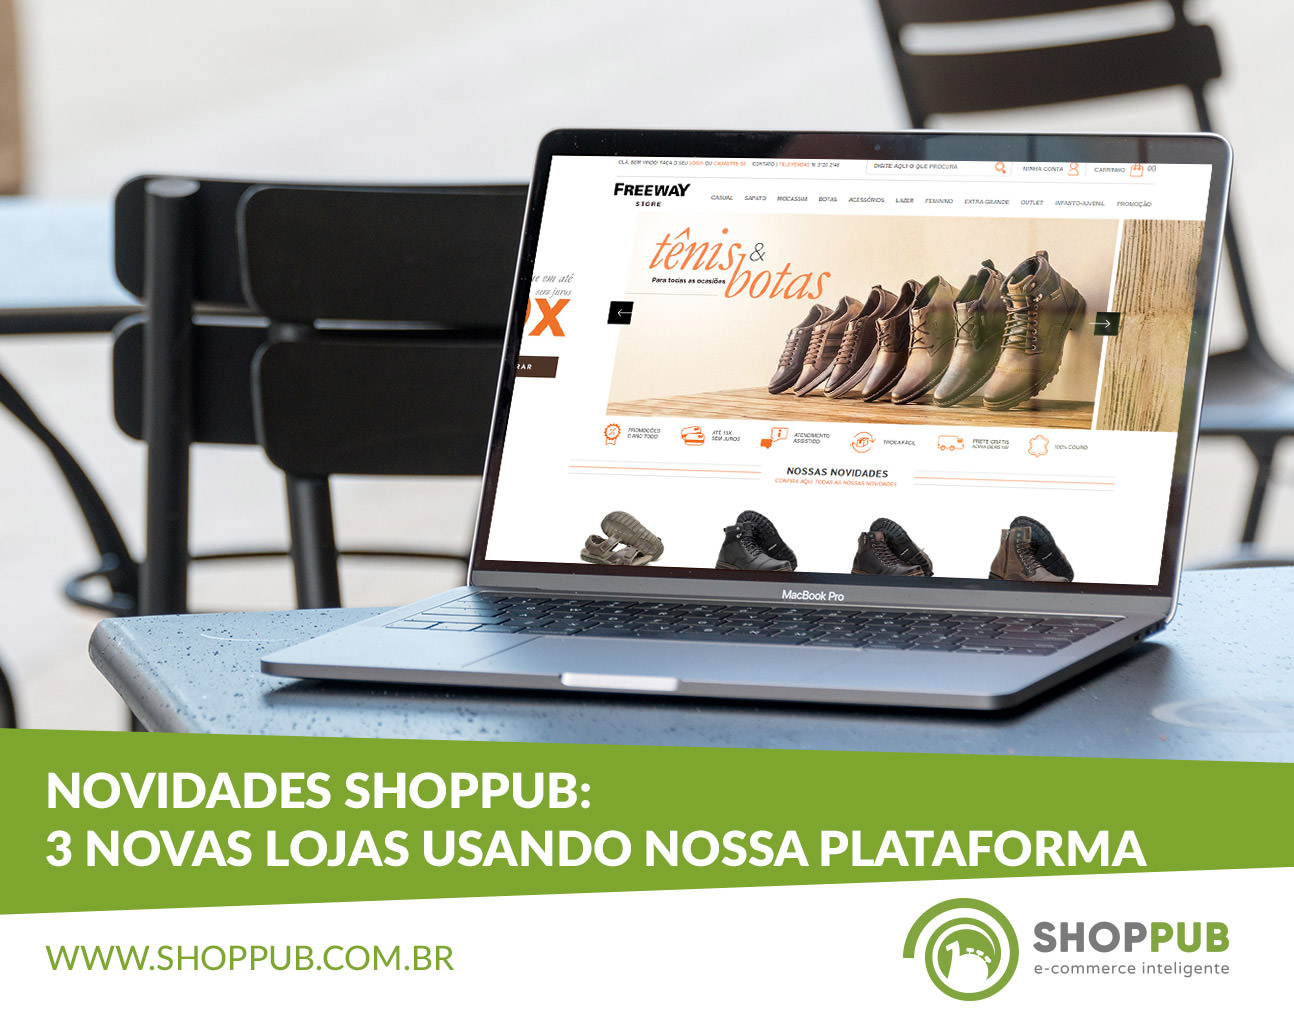 Novidades Shoppub: 3 novas lojas usando nossa plataforma